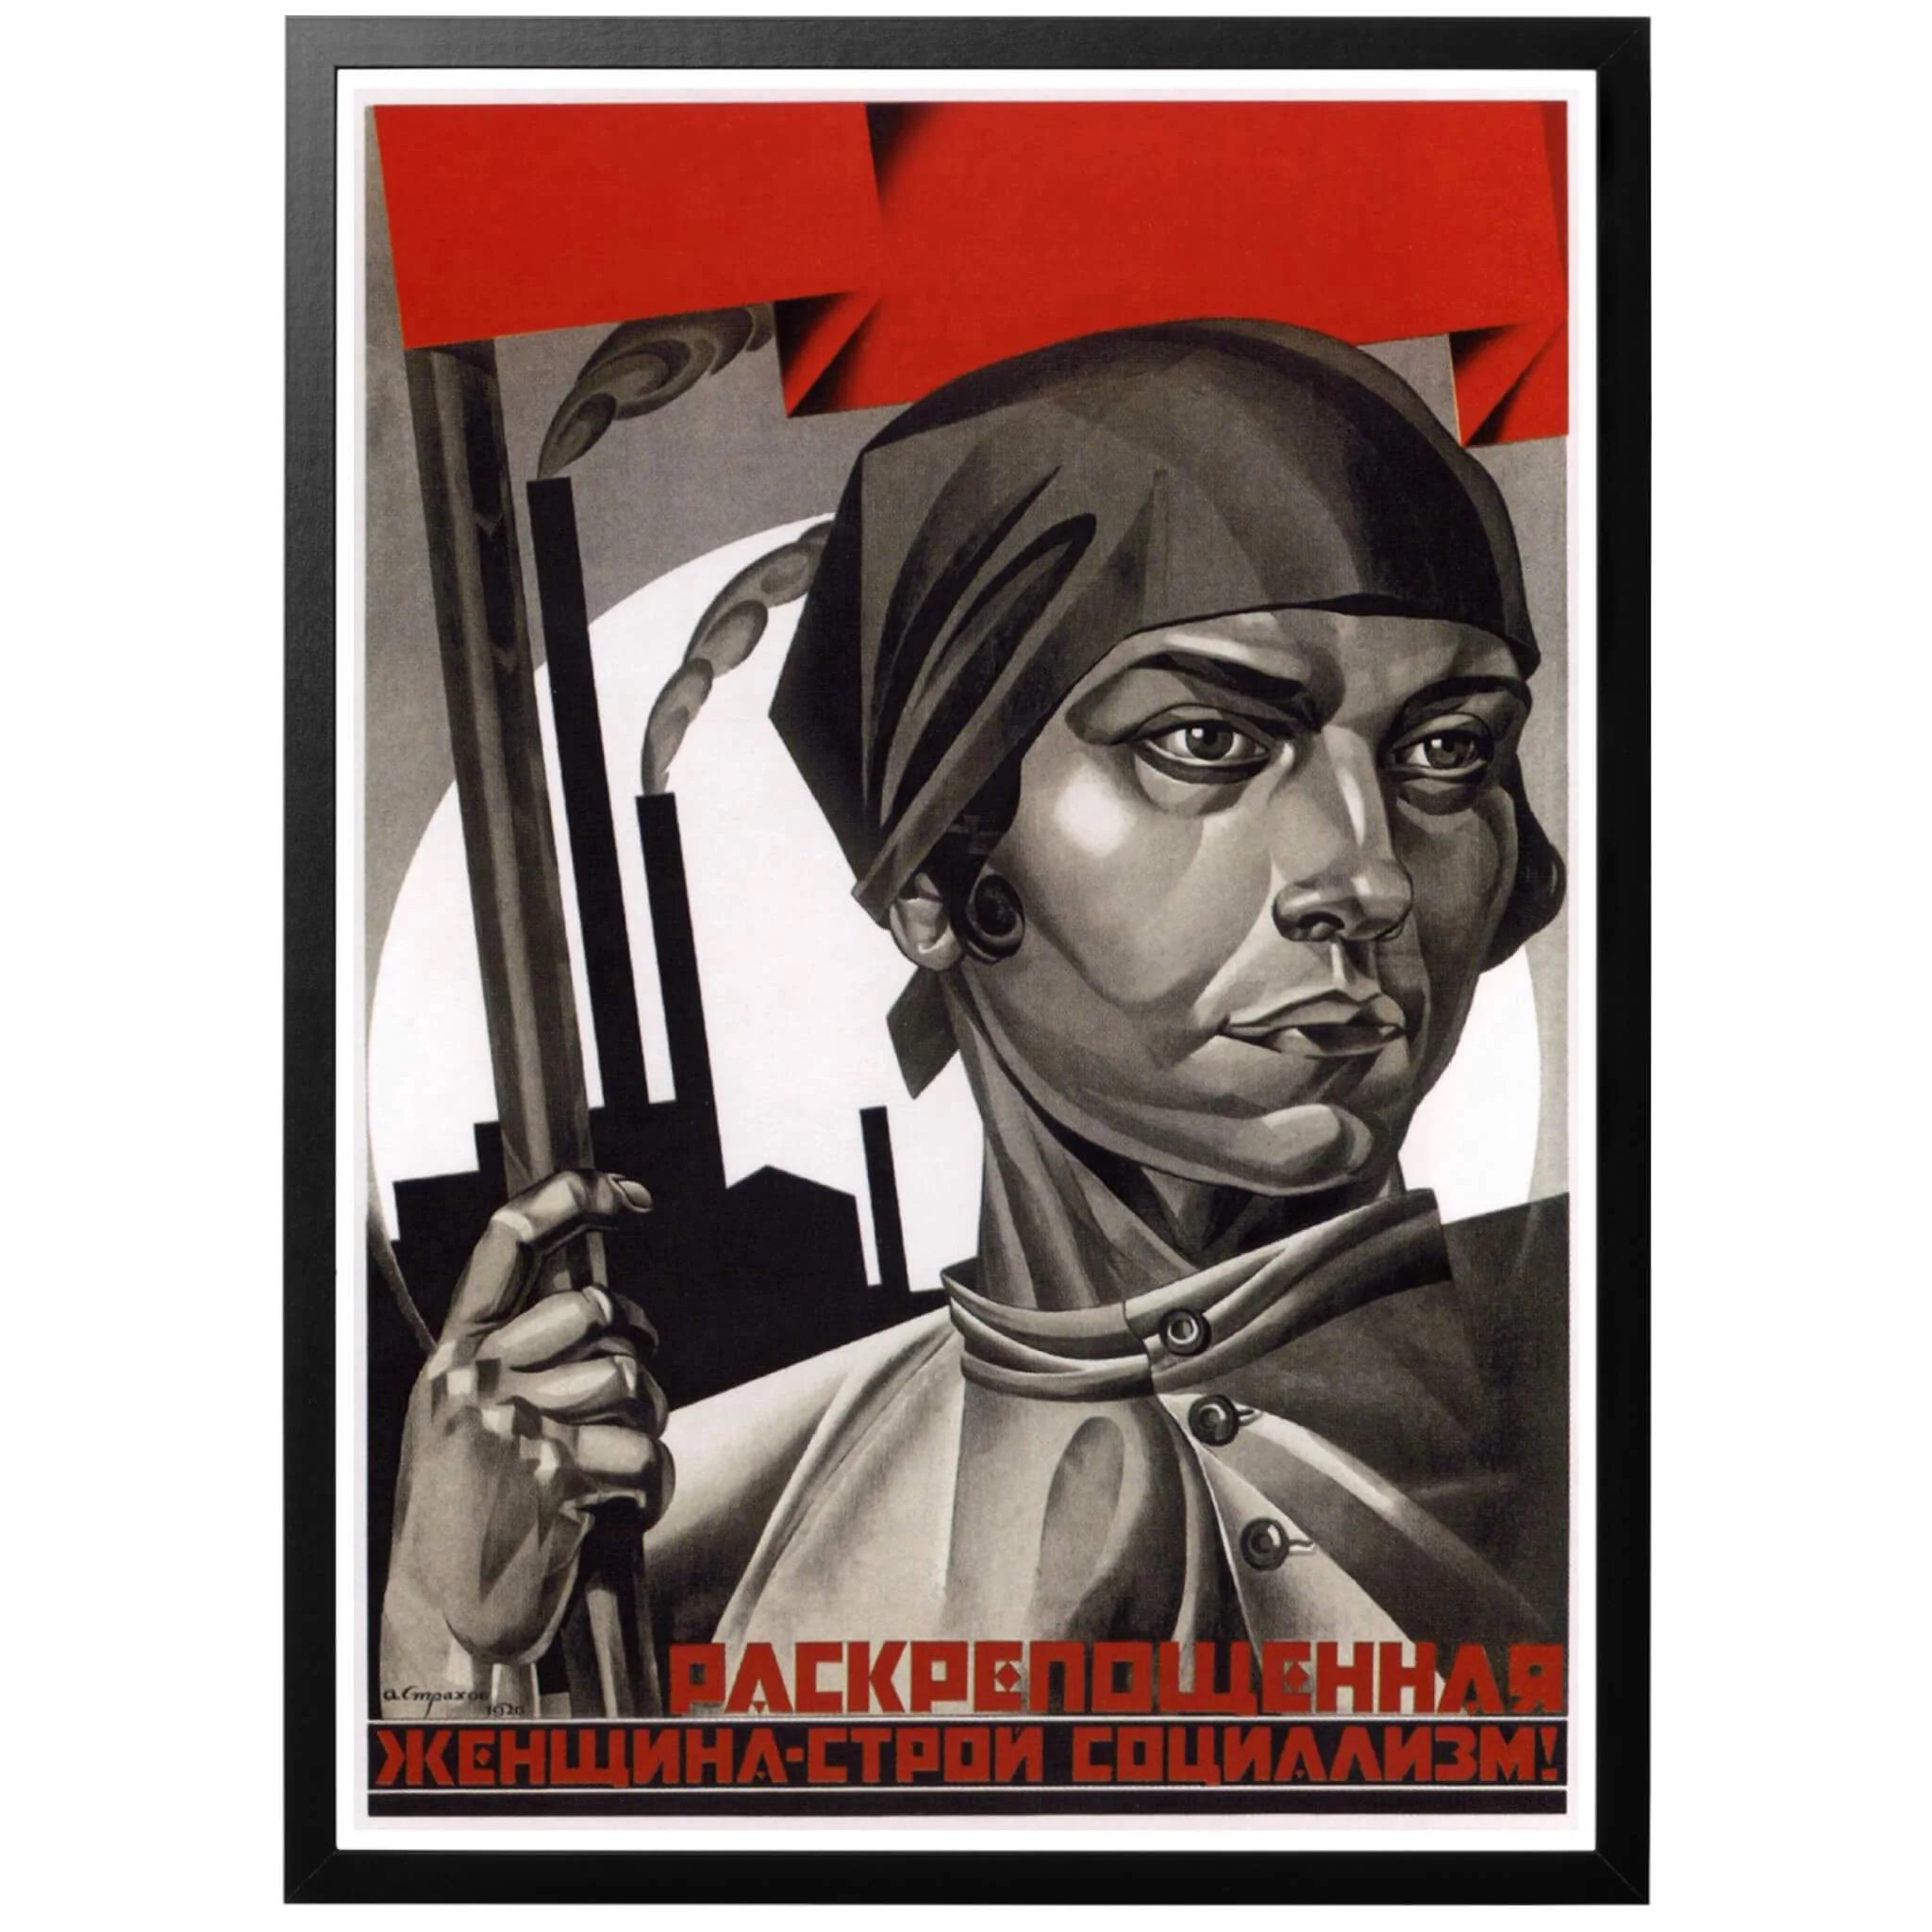 liberated women build up socialism poster 7d2768b3 c8d4 4e8e 9bdb 4a011c1d0fc9 2048x